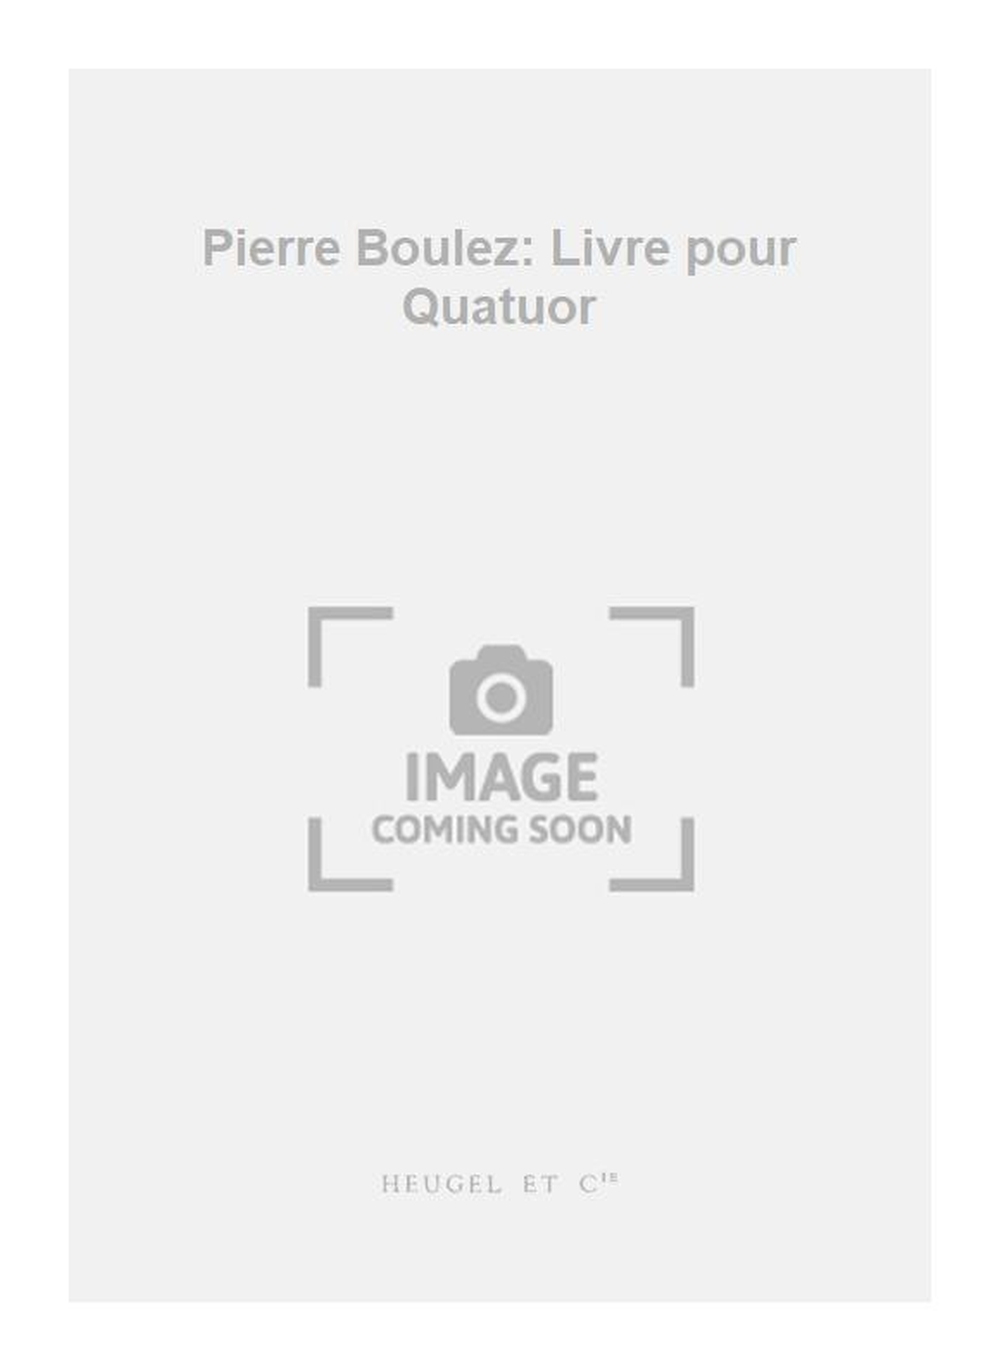 Pierre Boulez: Pierre Boulez: Livre pour Quatuor